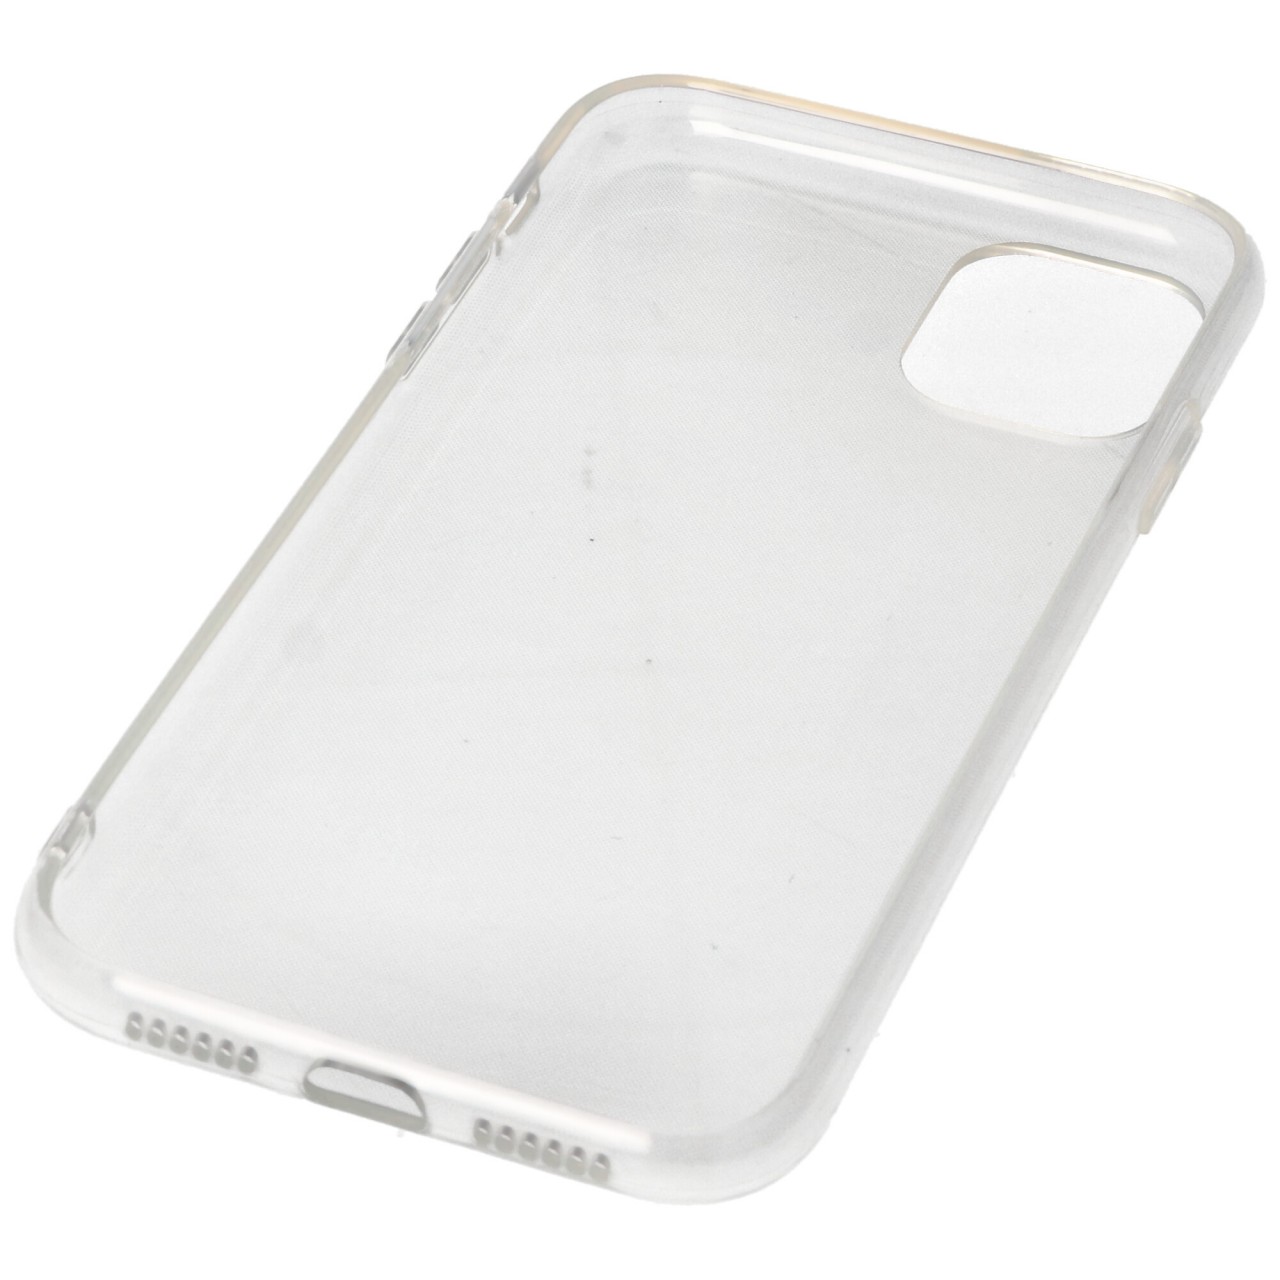 Hülle passend für Apple iPhone11 – transparente Schutzhülle, Anti-Gelb Luftkissen Fallschutz Silikon Handyhülle robustes TPU Case